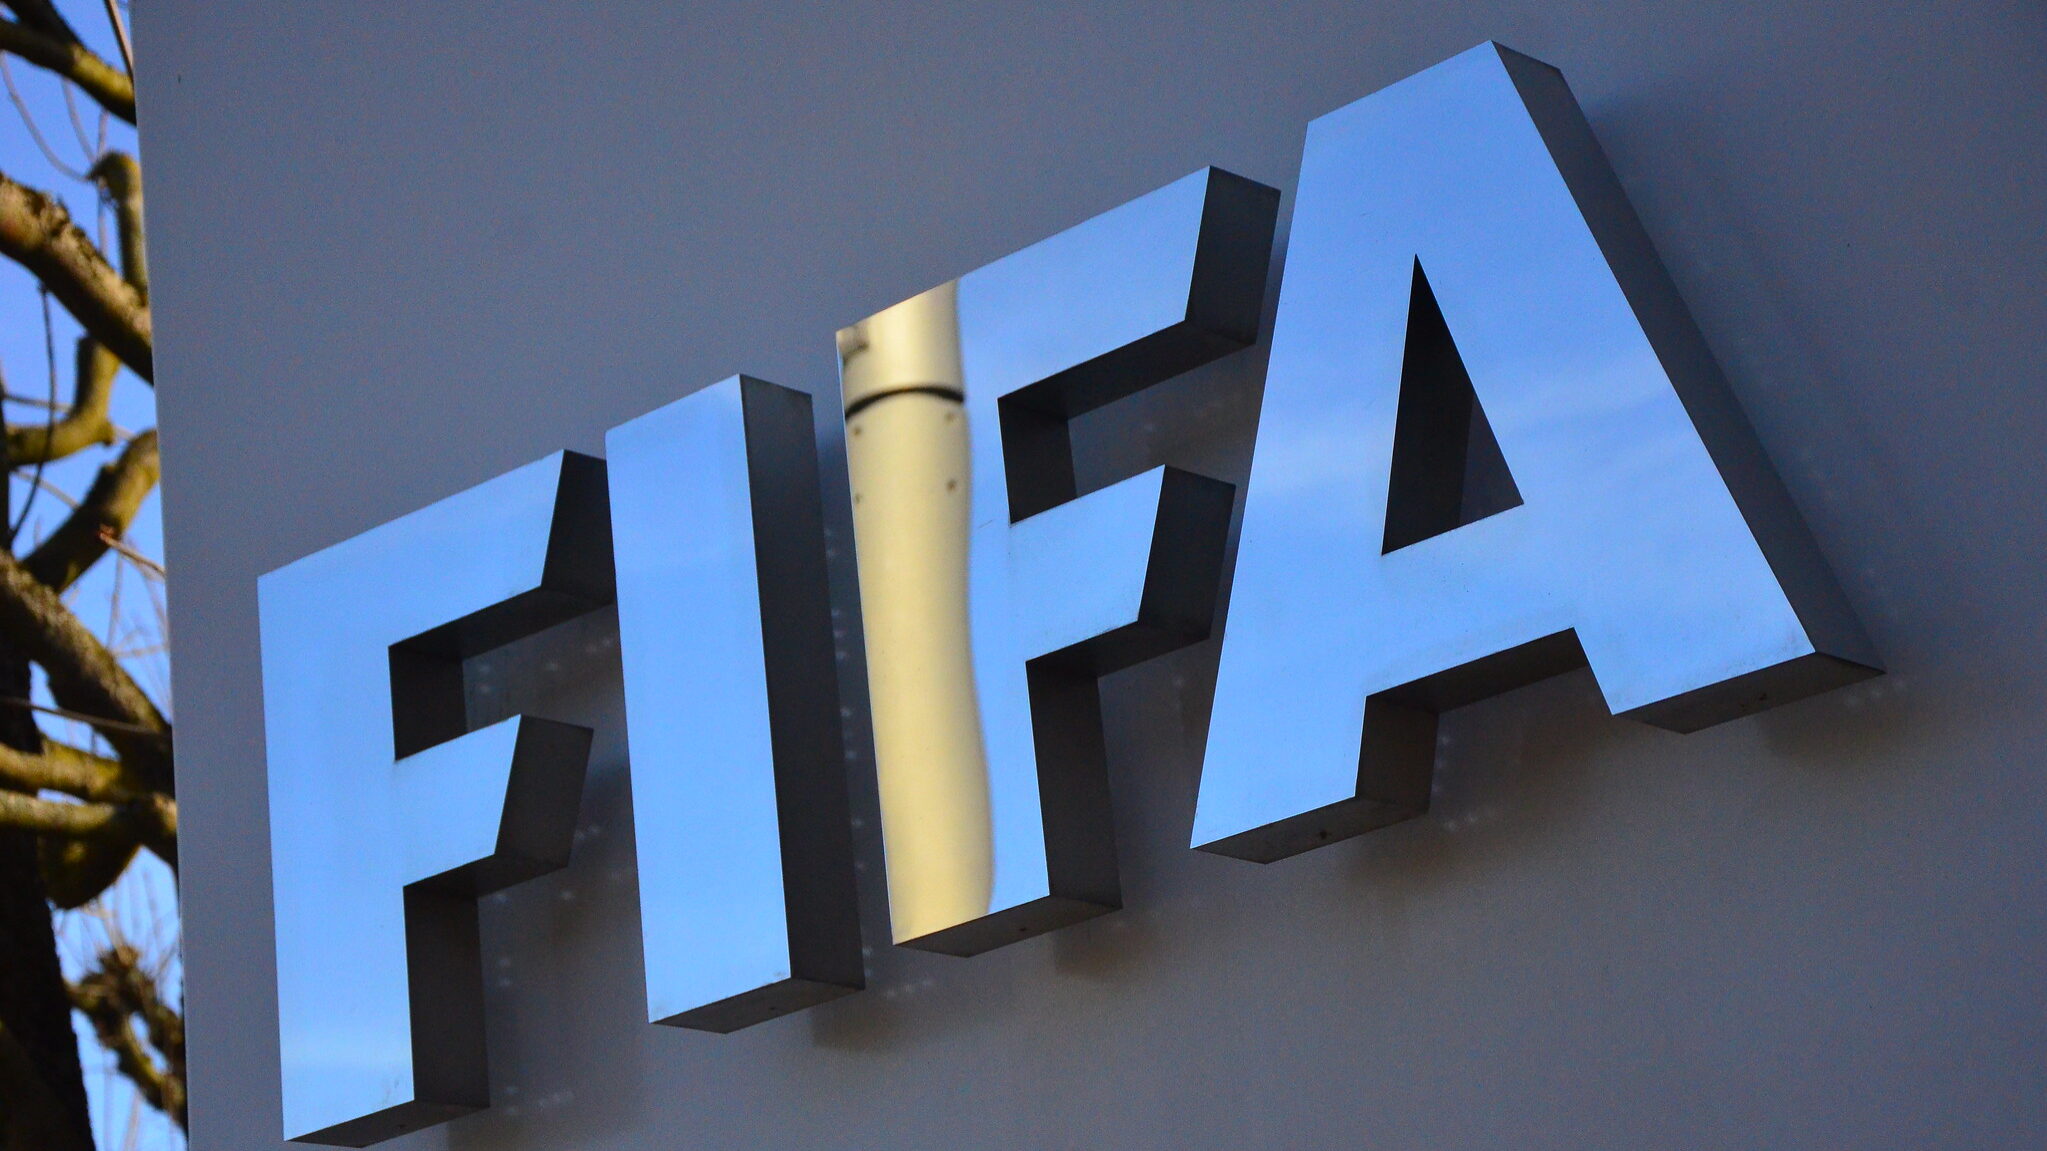 FIFA lança novo canal FAST para streaming gratuito; veja onde assistir